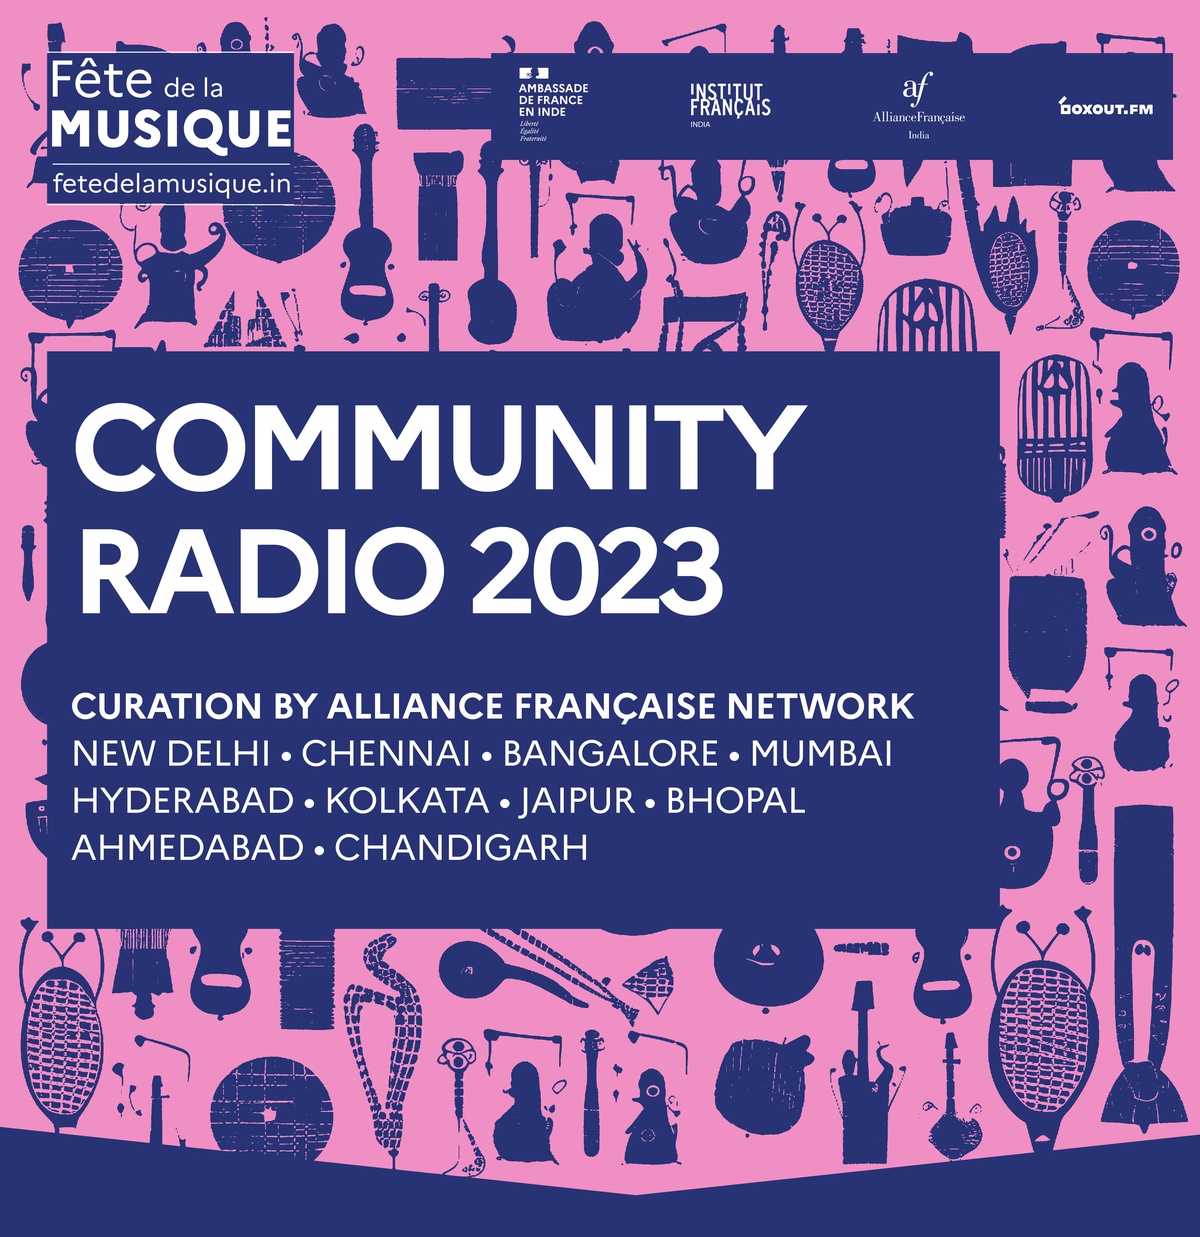 Alliance Française Community Radio 2023 - Fête de la Musique 2021